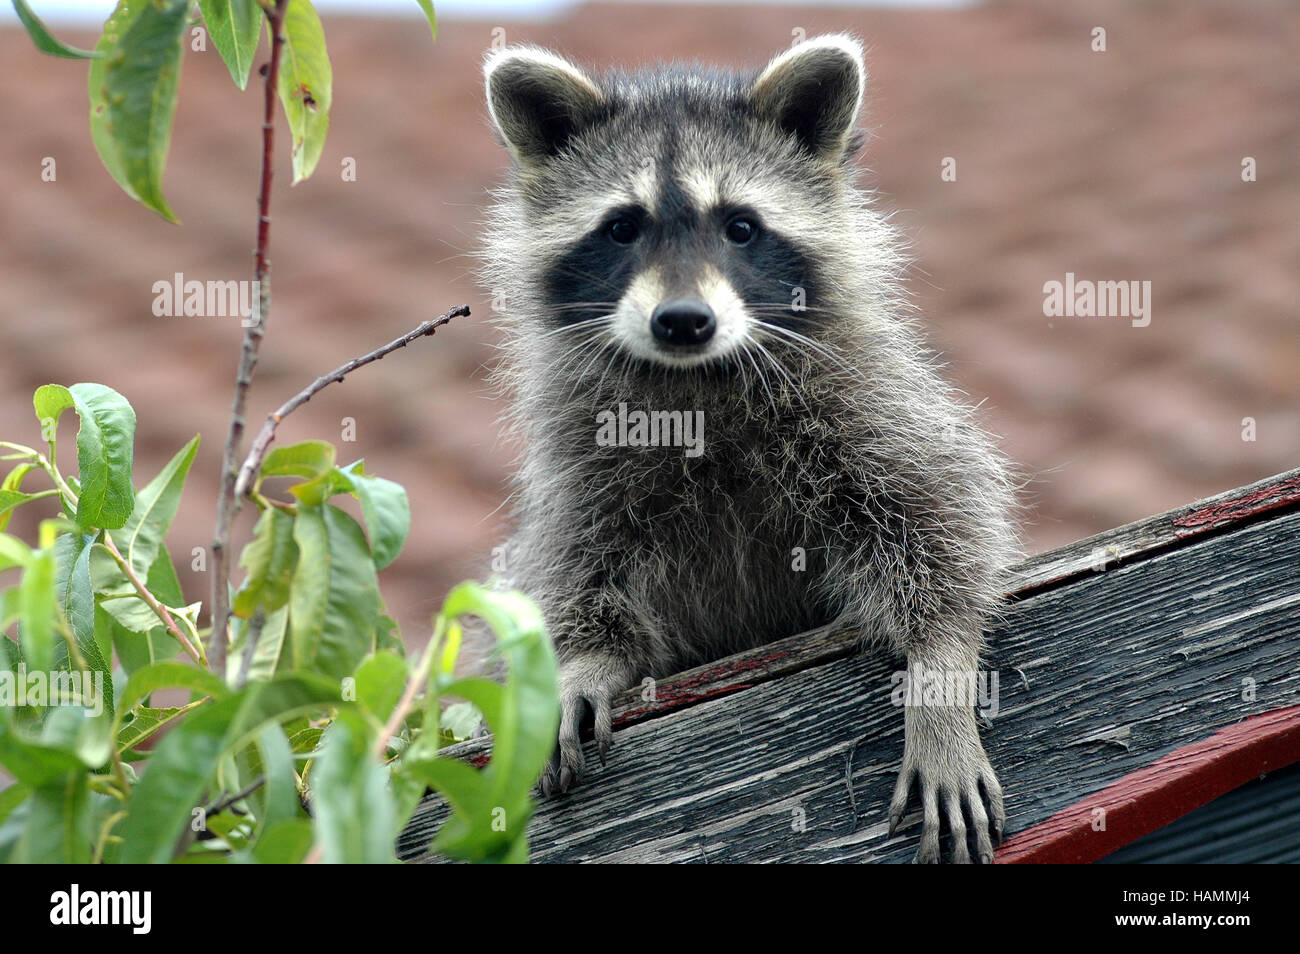 Shepherd raising young raccoons Stock Photo